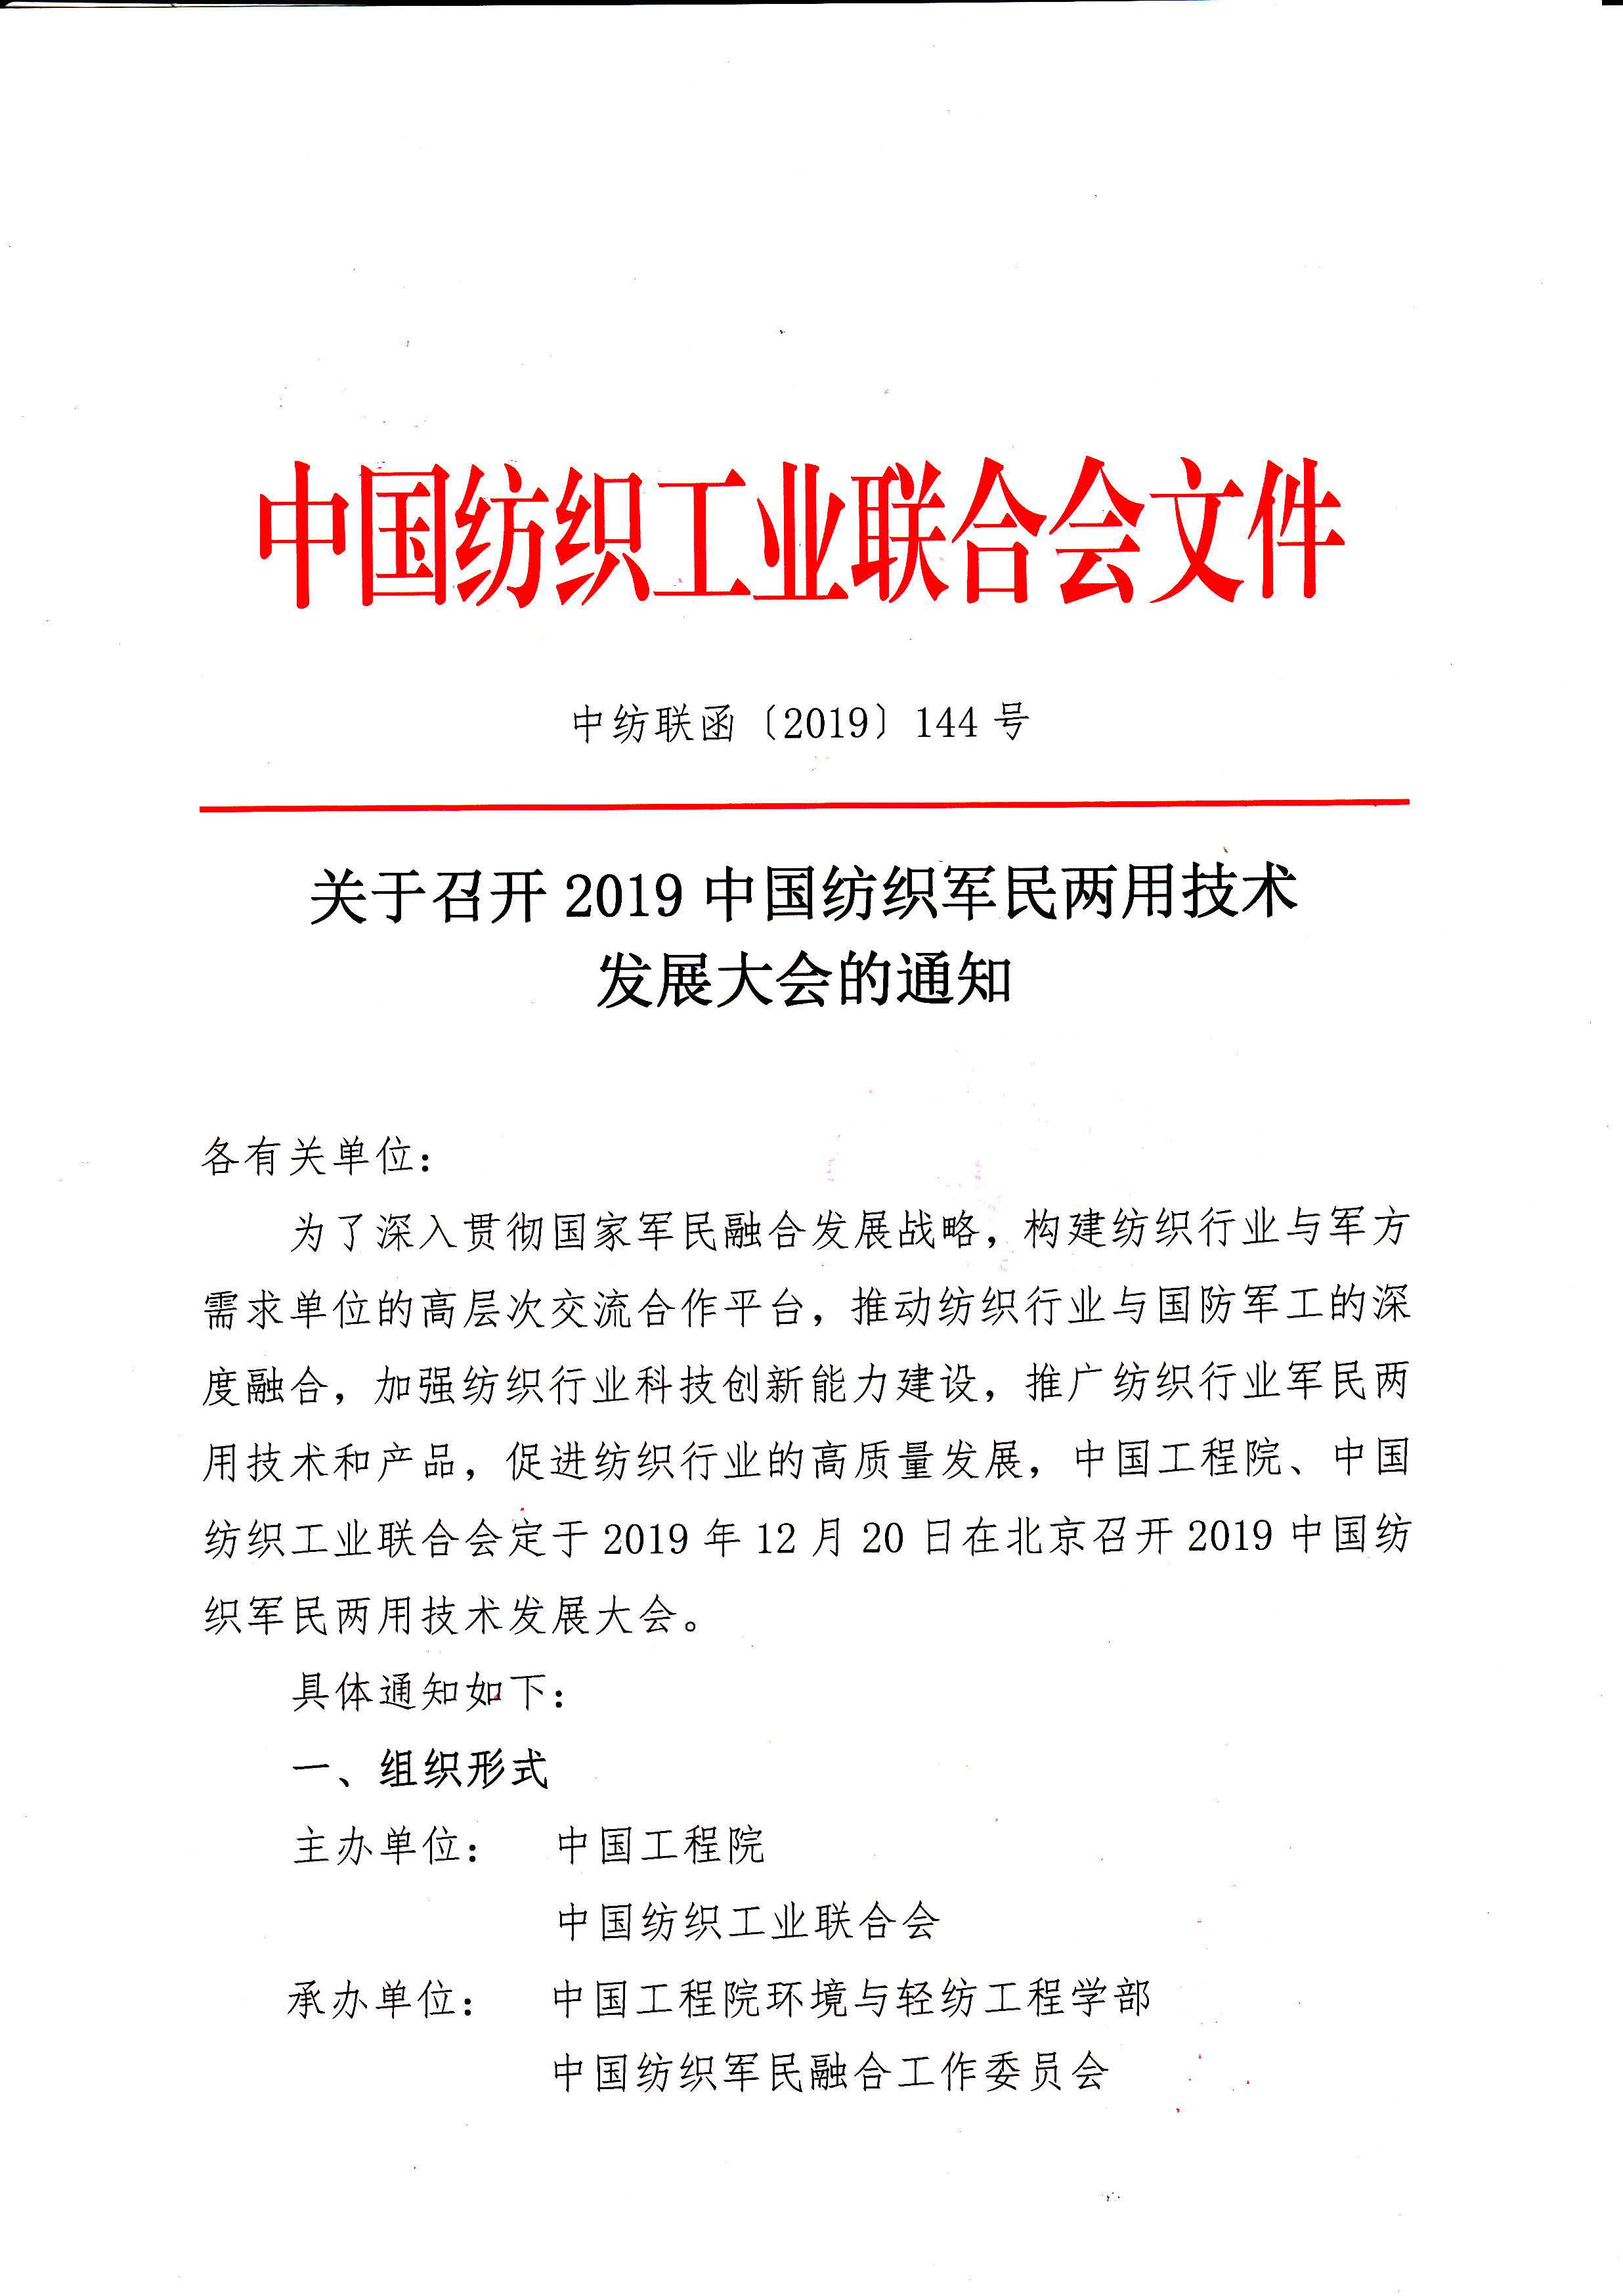 关于召开2019中国纺织军民两用技术发展大会的通知